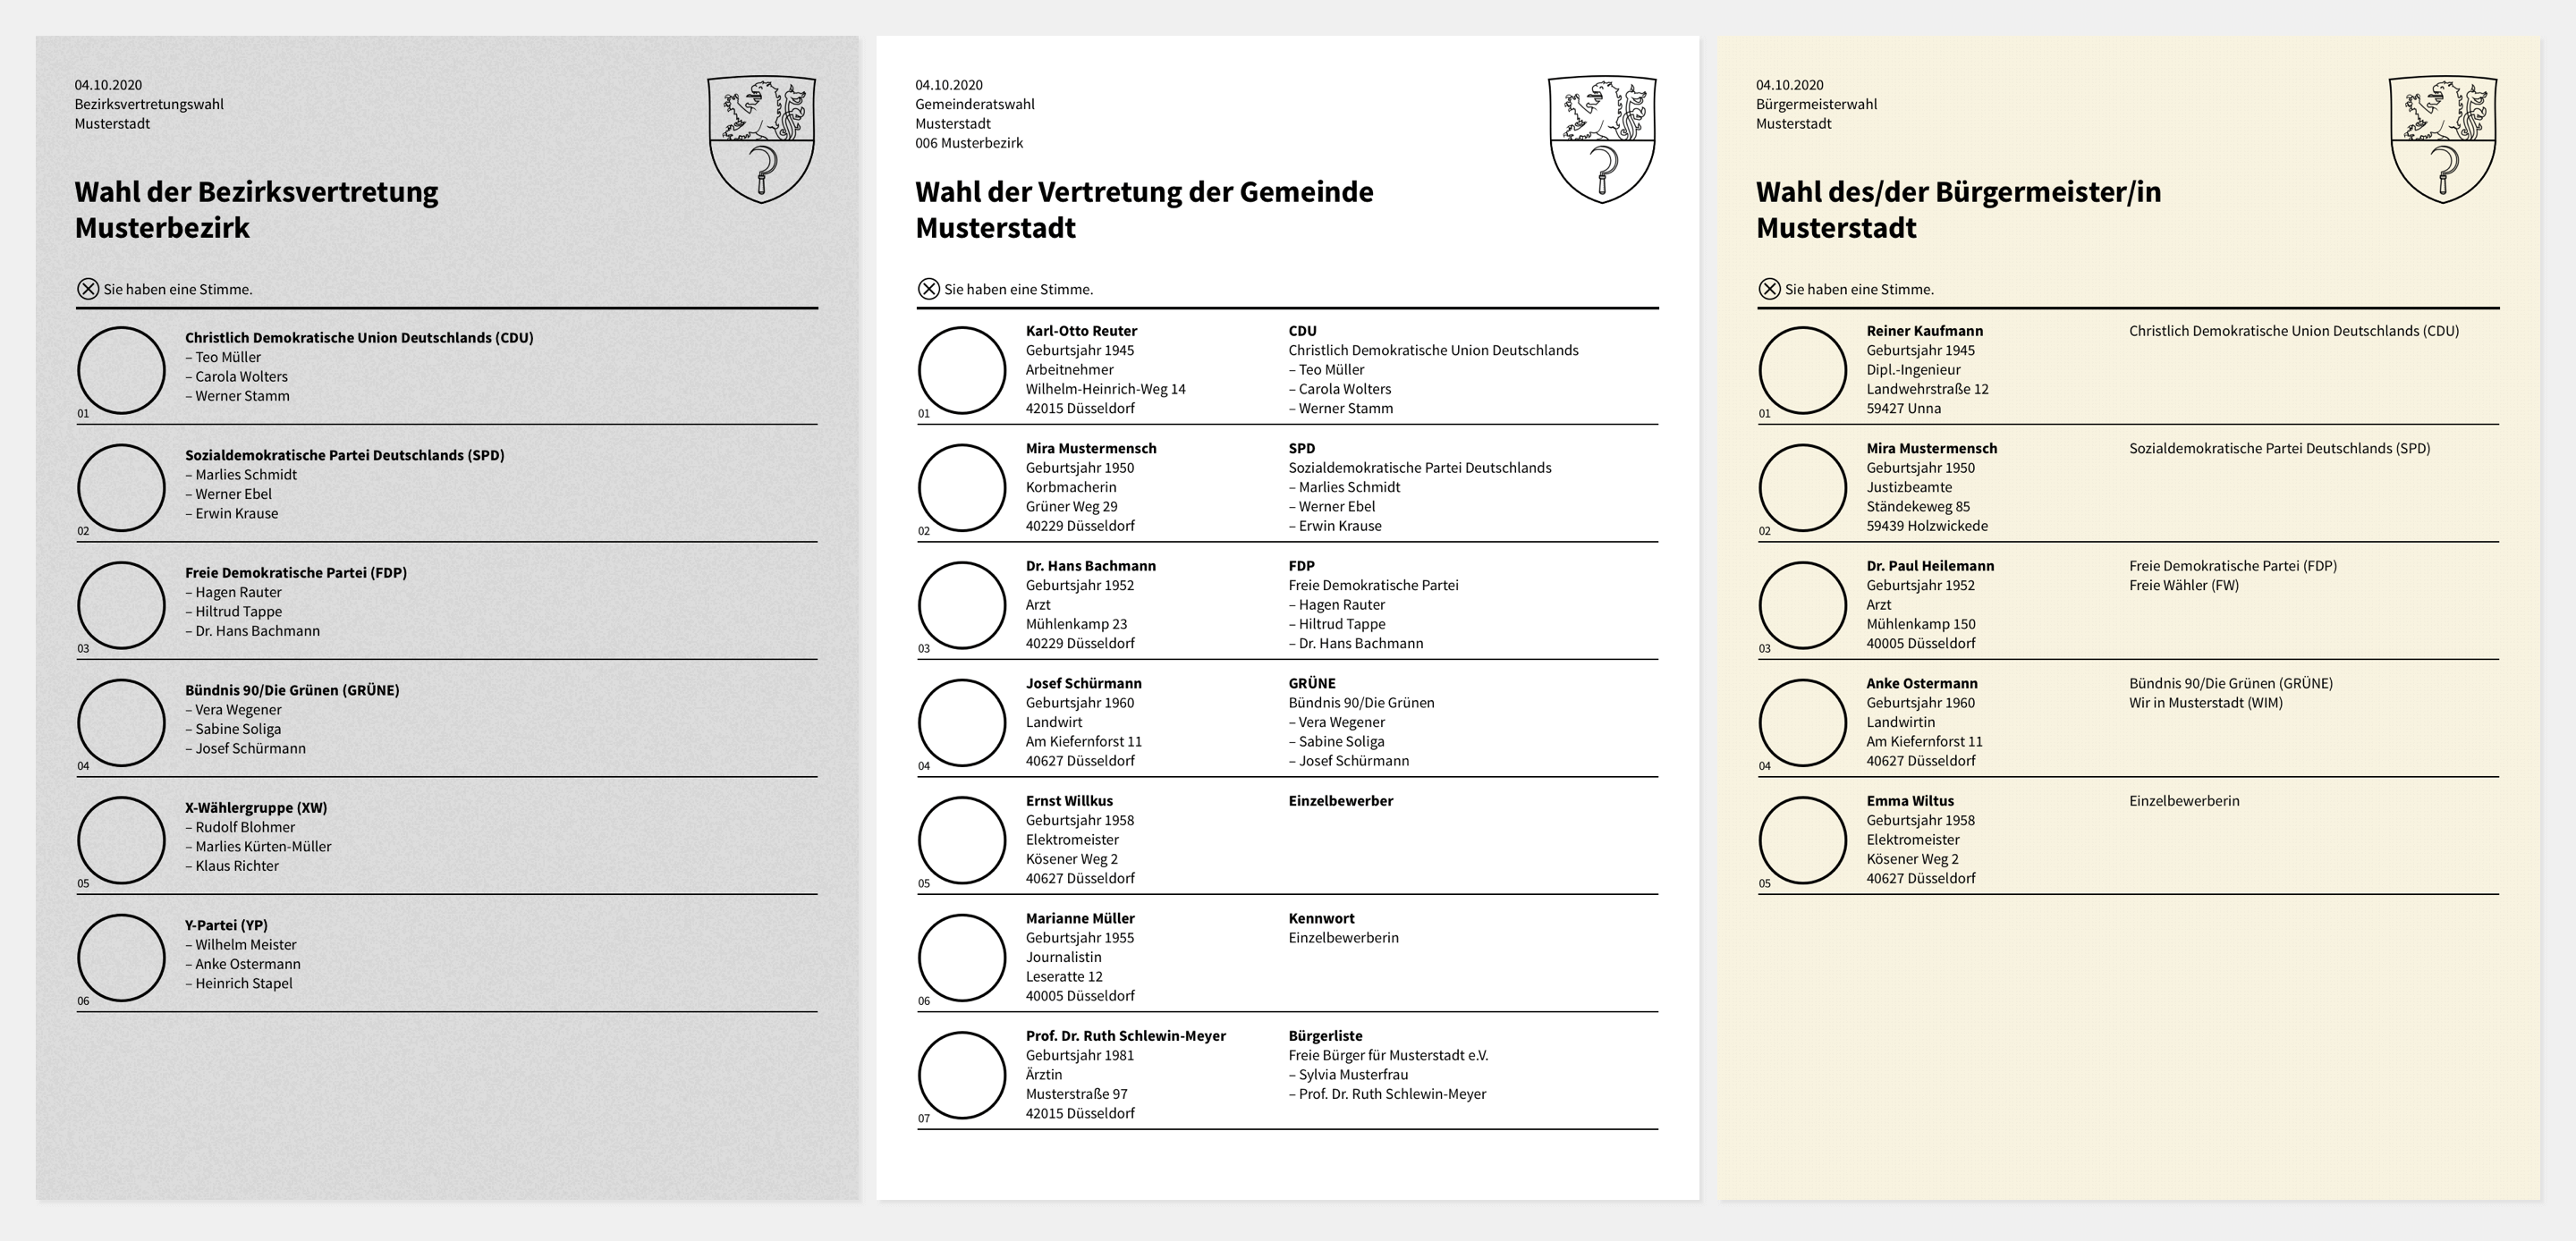 Das Bild zeigt einen neuen Entwurf für einen besseren Stimmzettel. Abgebildet sind die Zettel für die Bezirksvertretungwahl, die Gemeinderatswahl und die Bürgermeisterwahl.